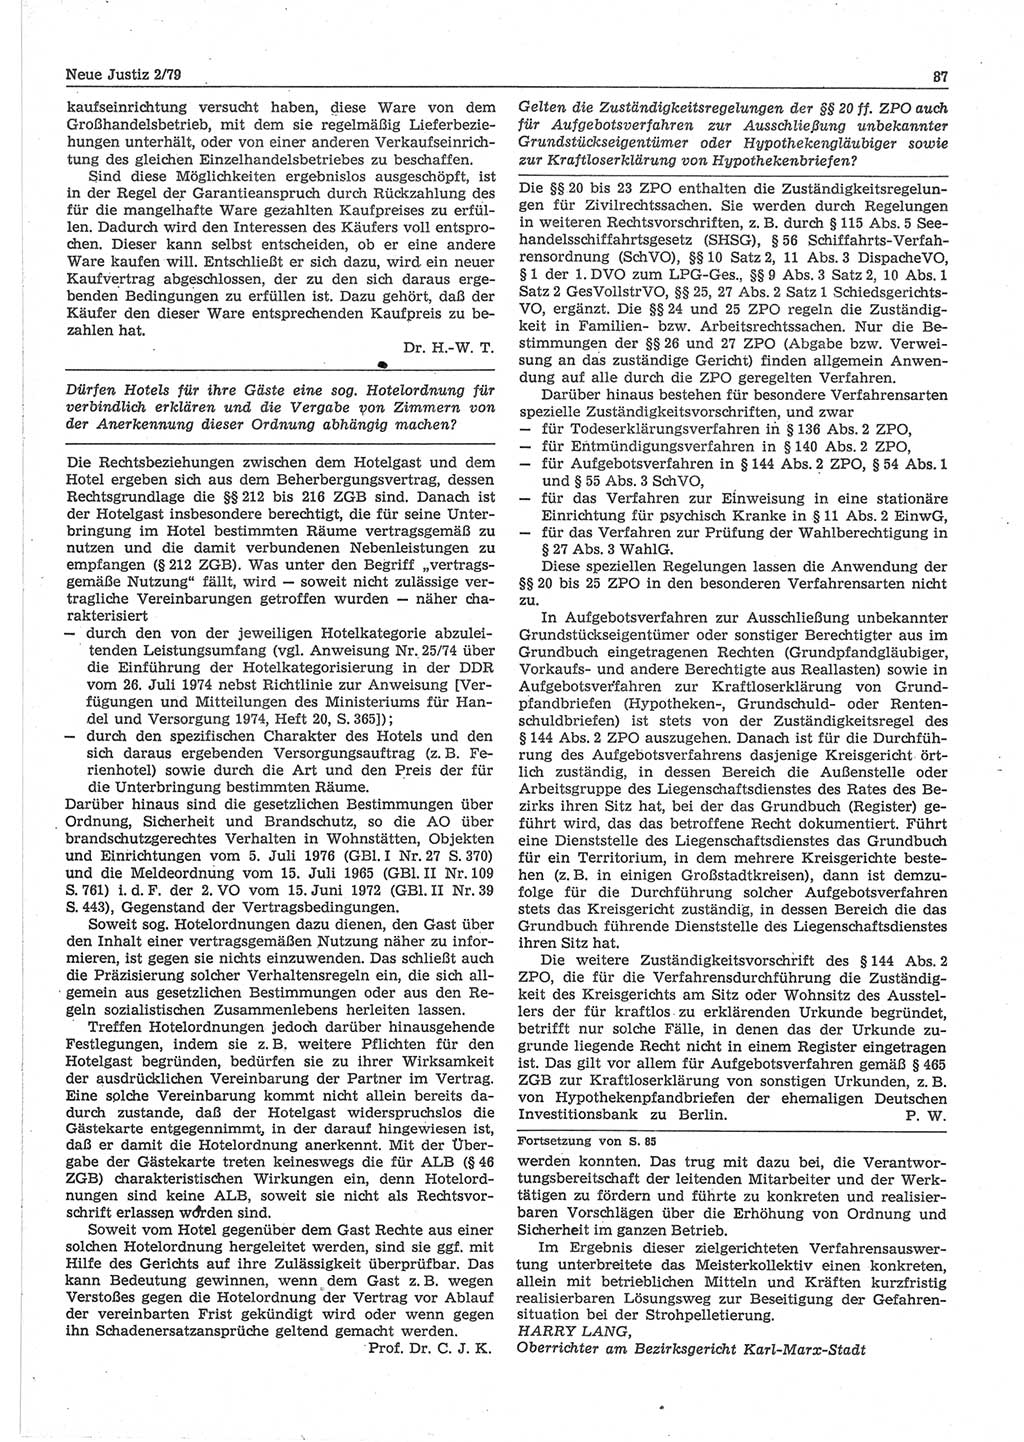 Neue Justiz (NJ), Zeitschrift für sozialistisches Recht und Gesetzlichkeit [Deutsche Demokratische Republik (DDR)], 33. Jahrgang 1979, Seite 87 (NJ DDR 1979, S. 87)